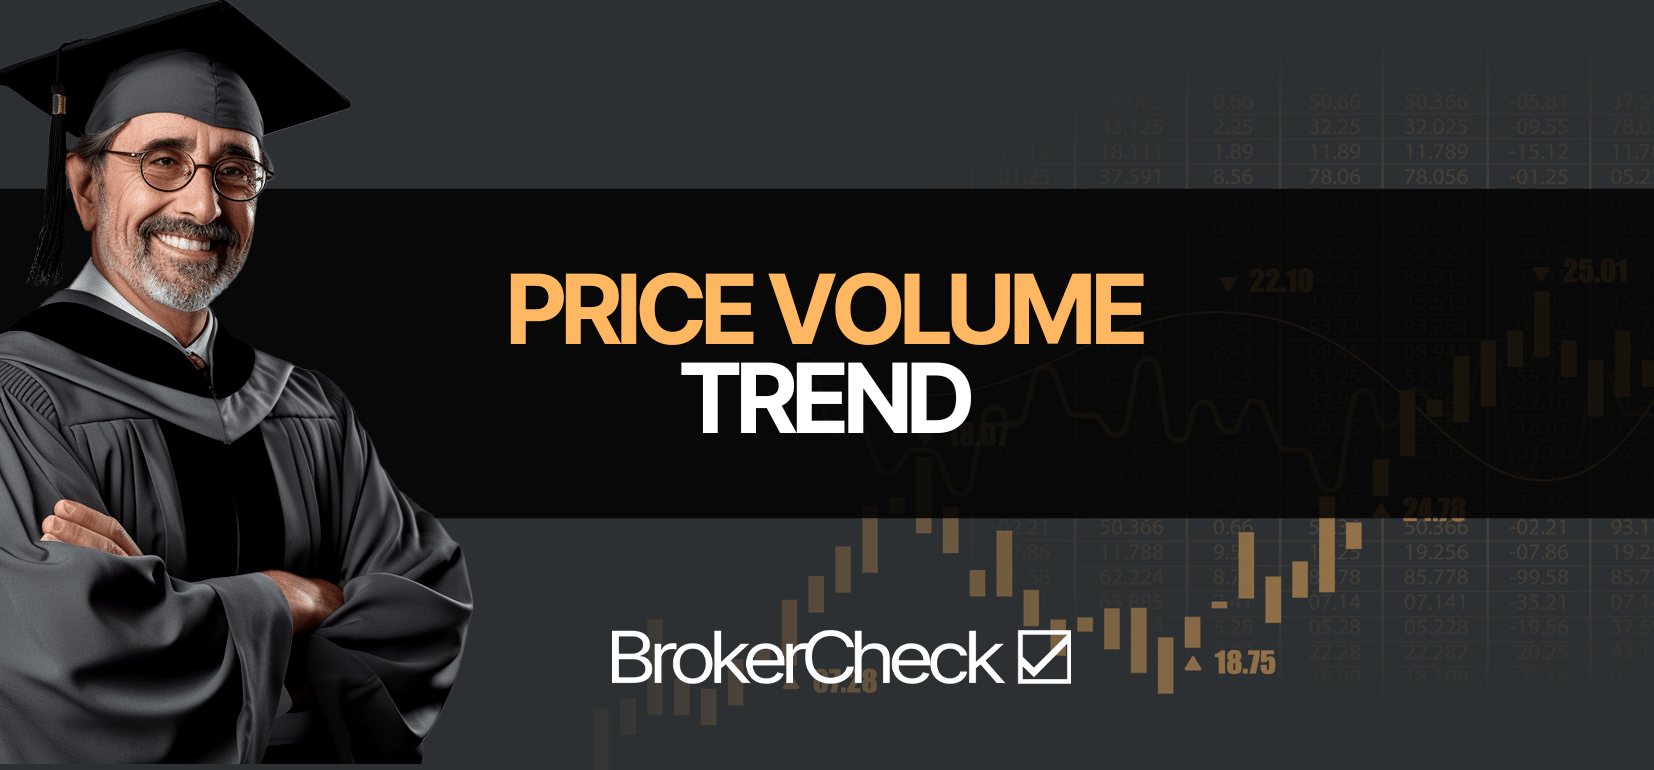 Price Volume Trend